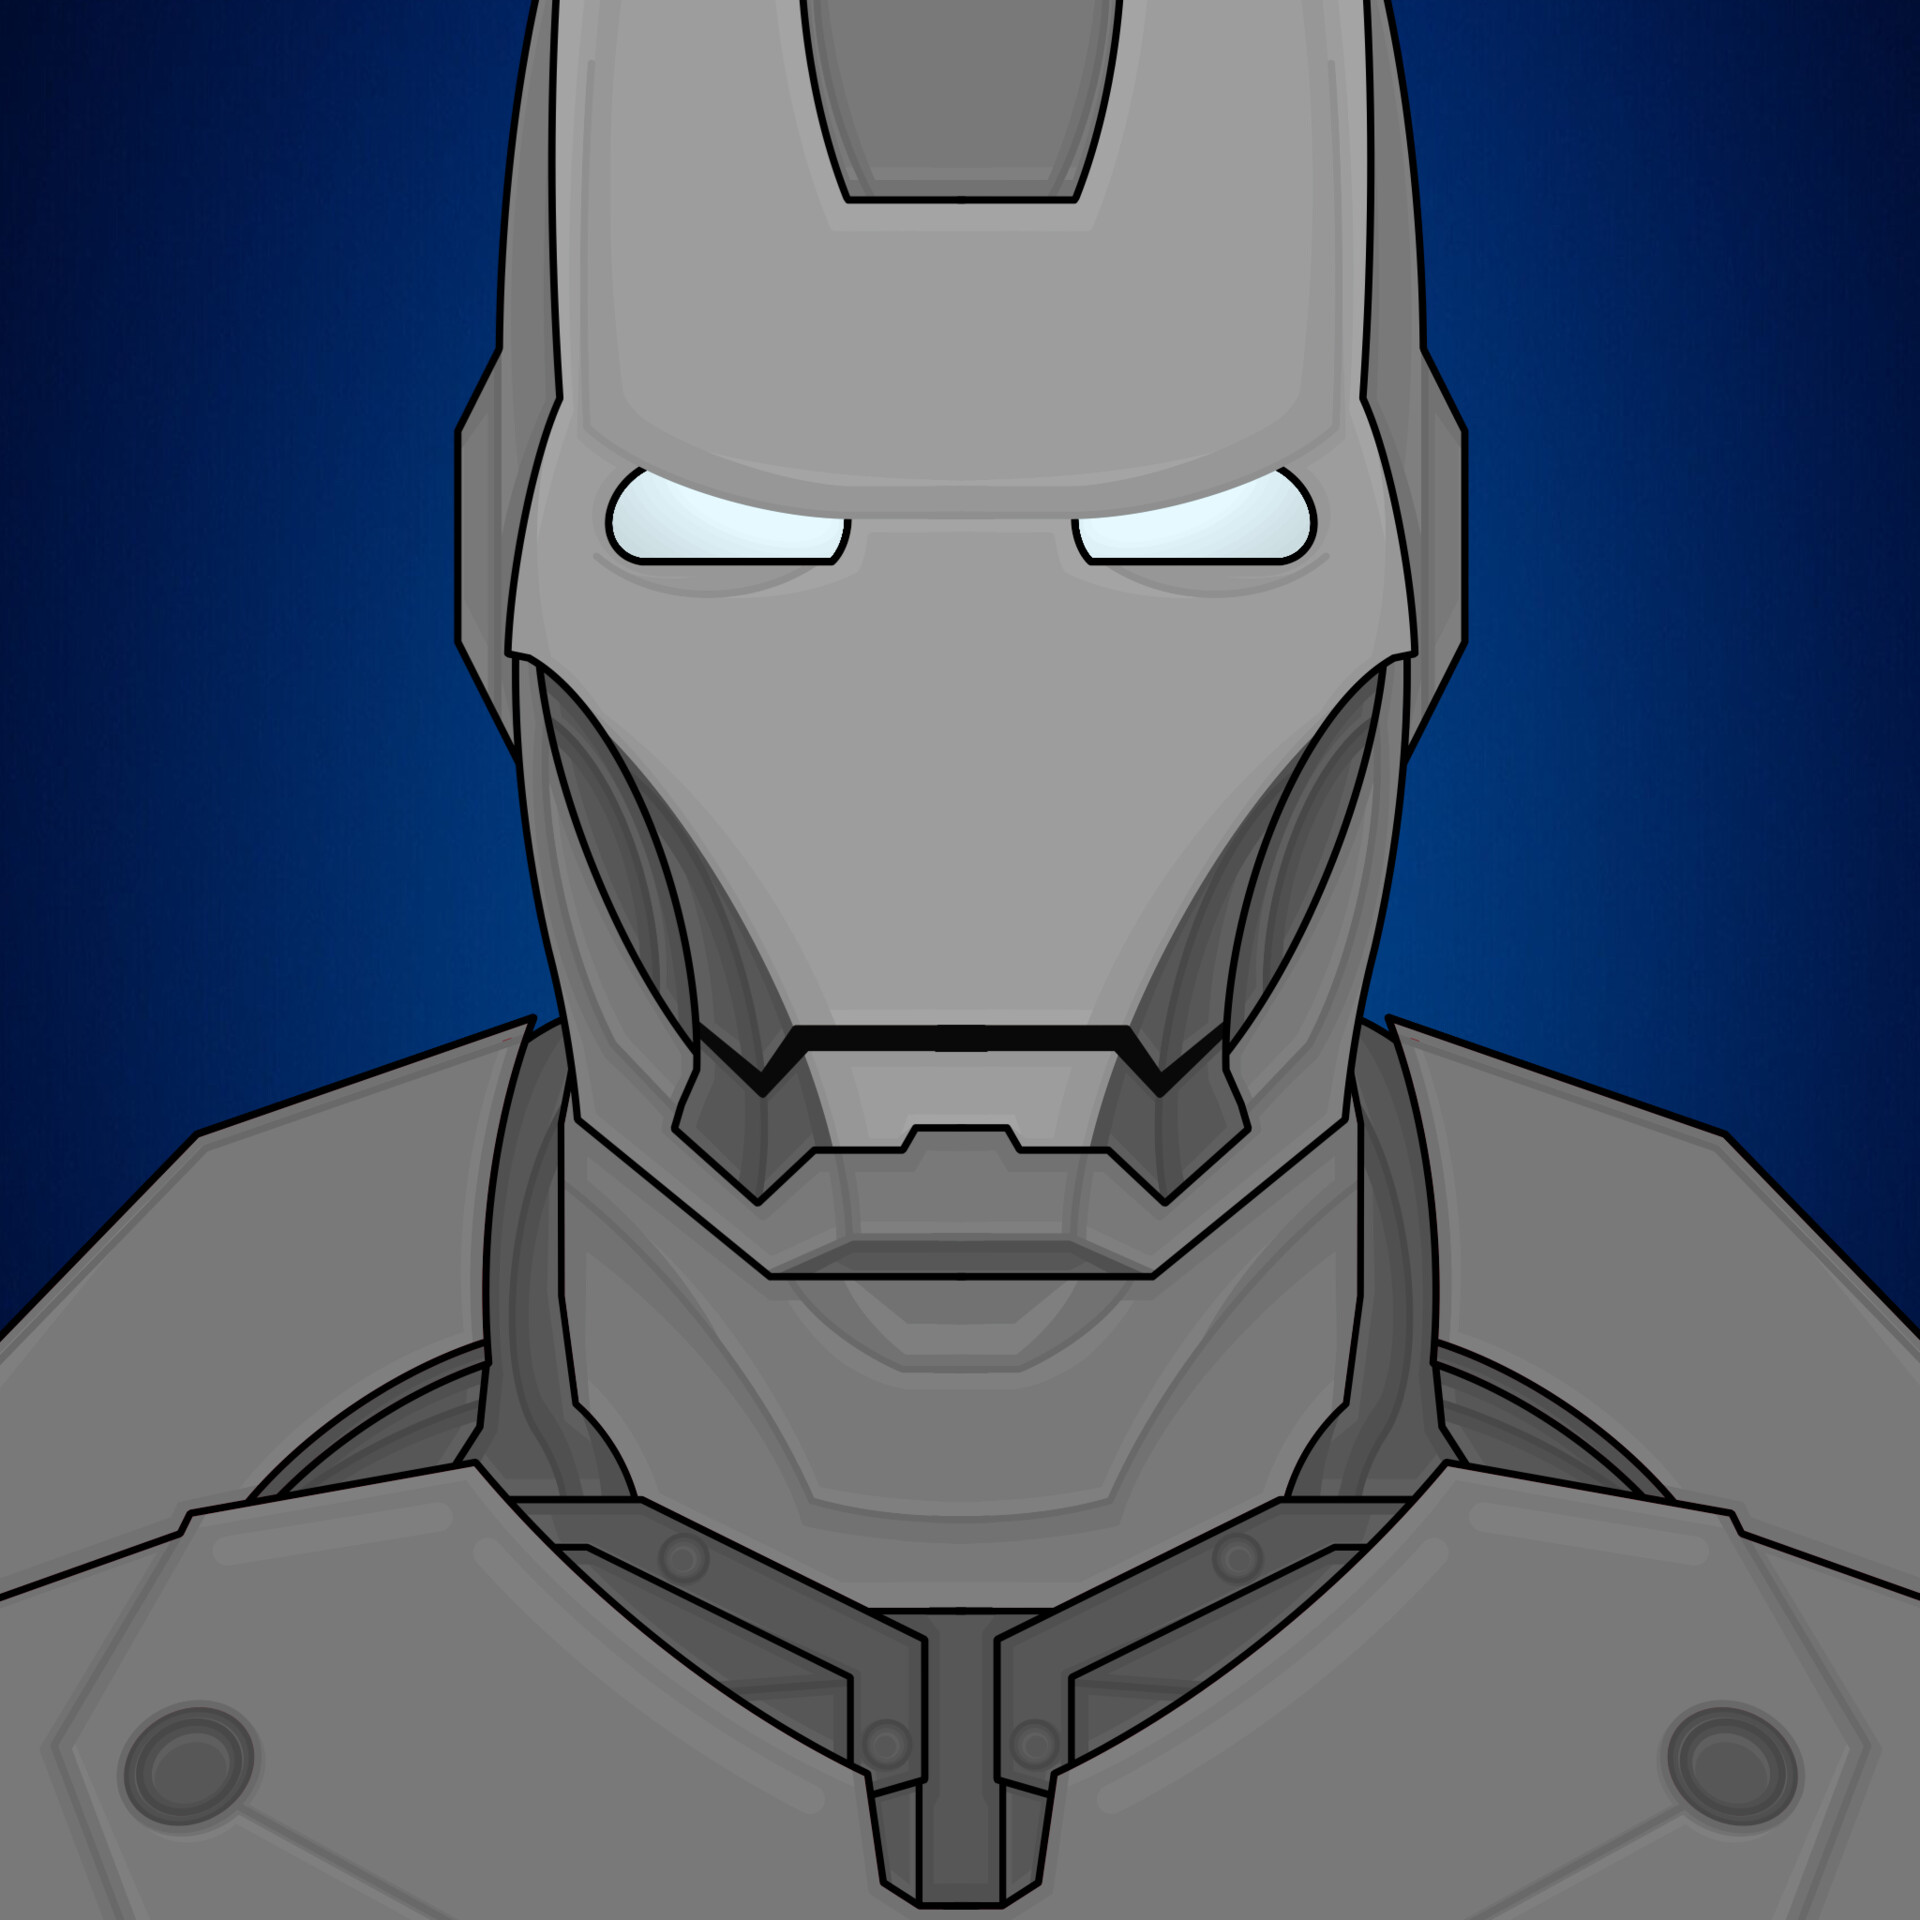 Iron Man mark II | Iron man suit, Iron man, Iron man armor